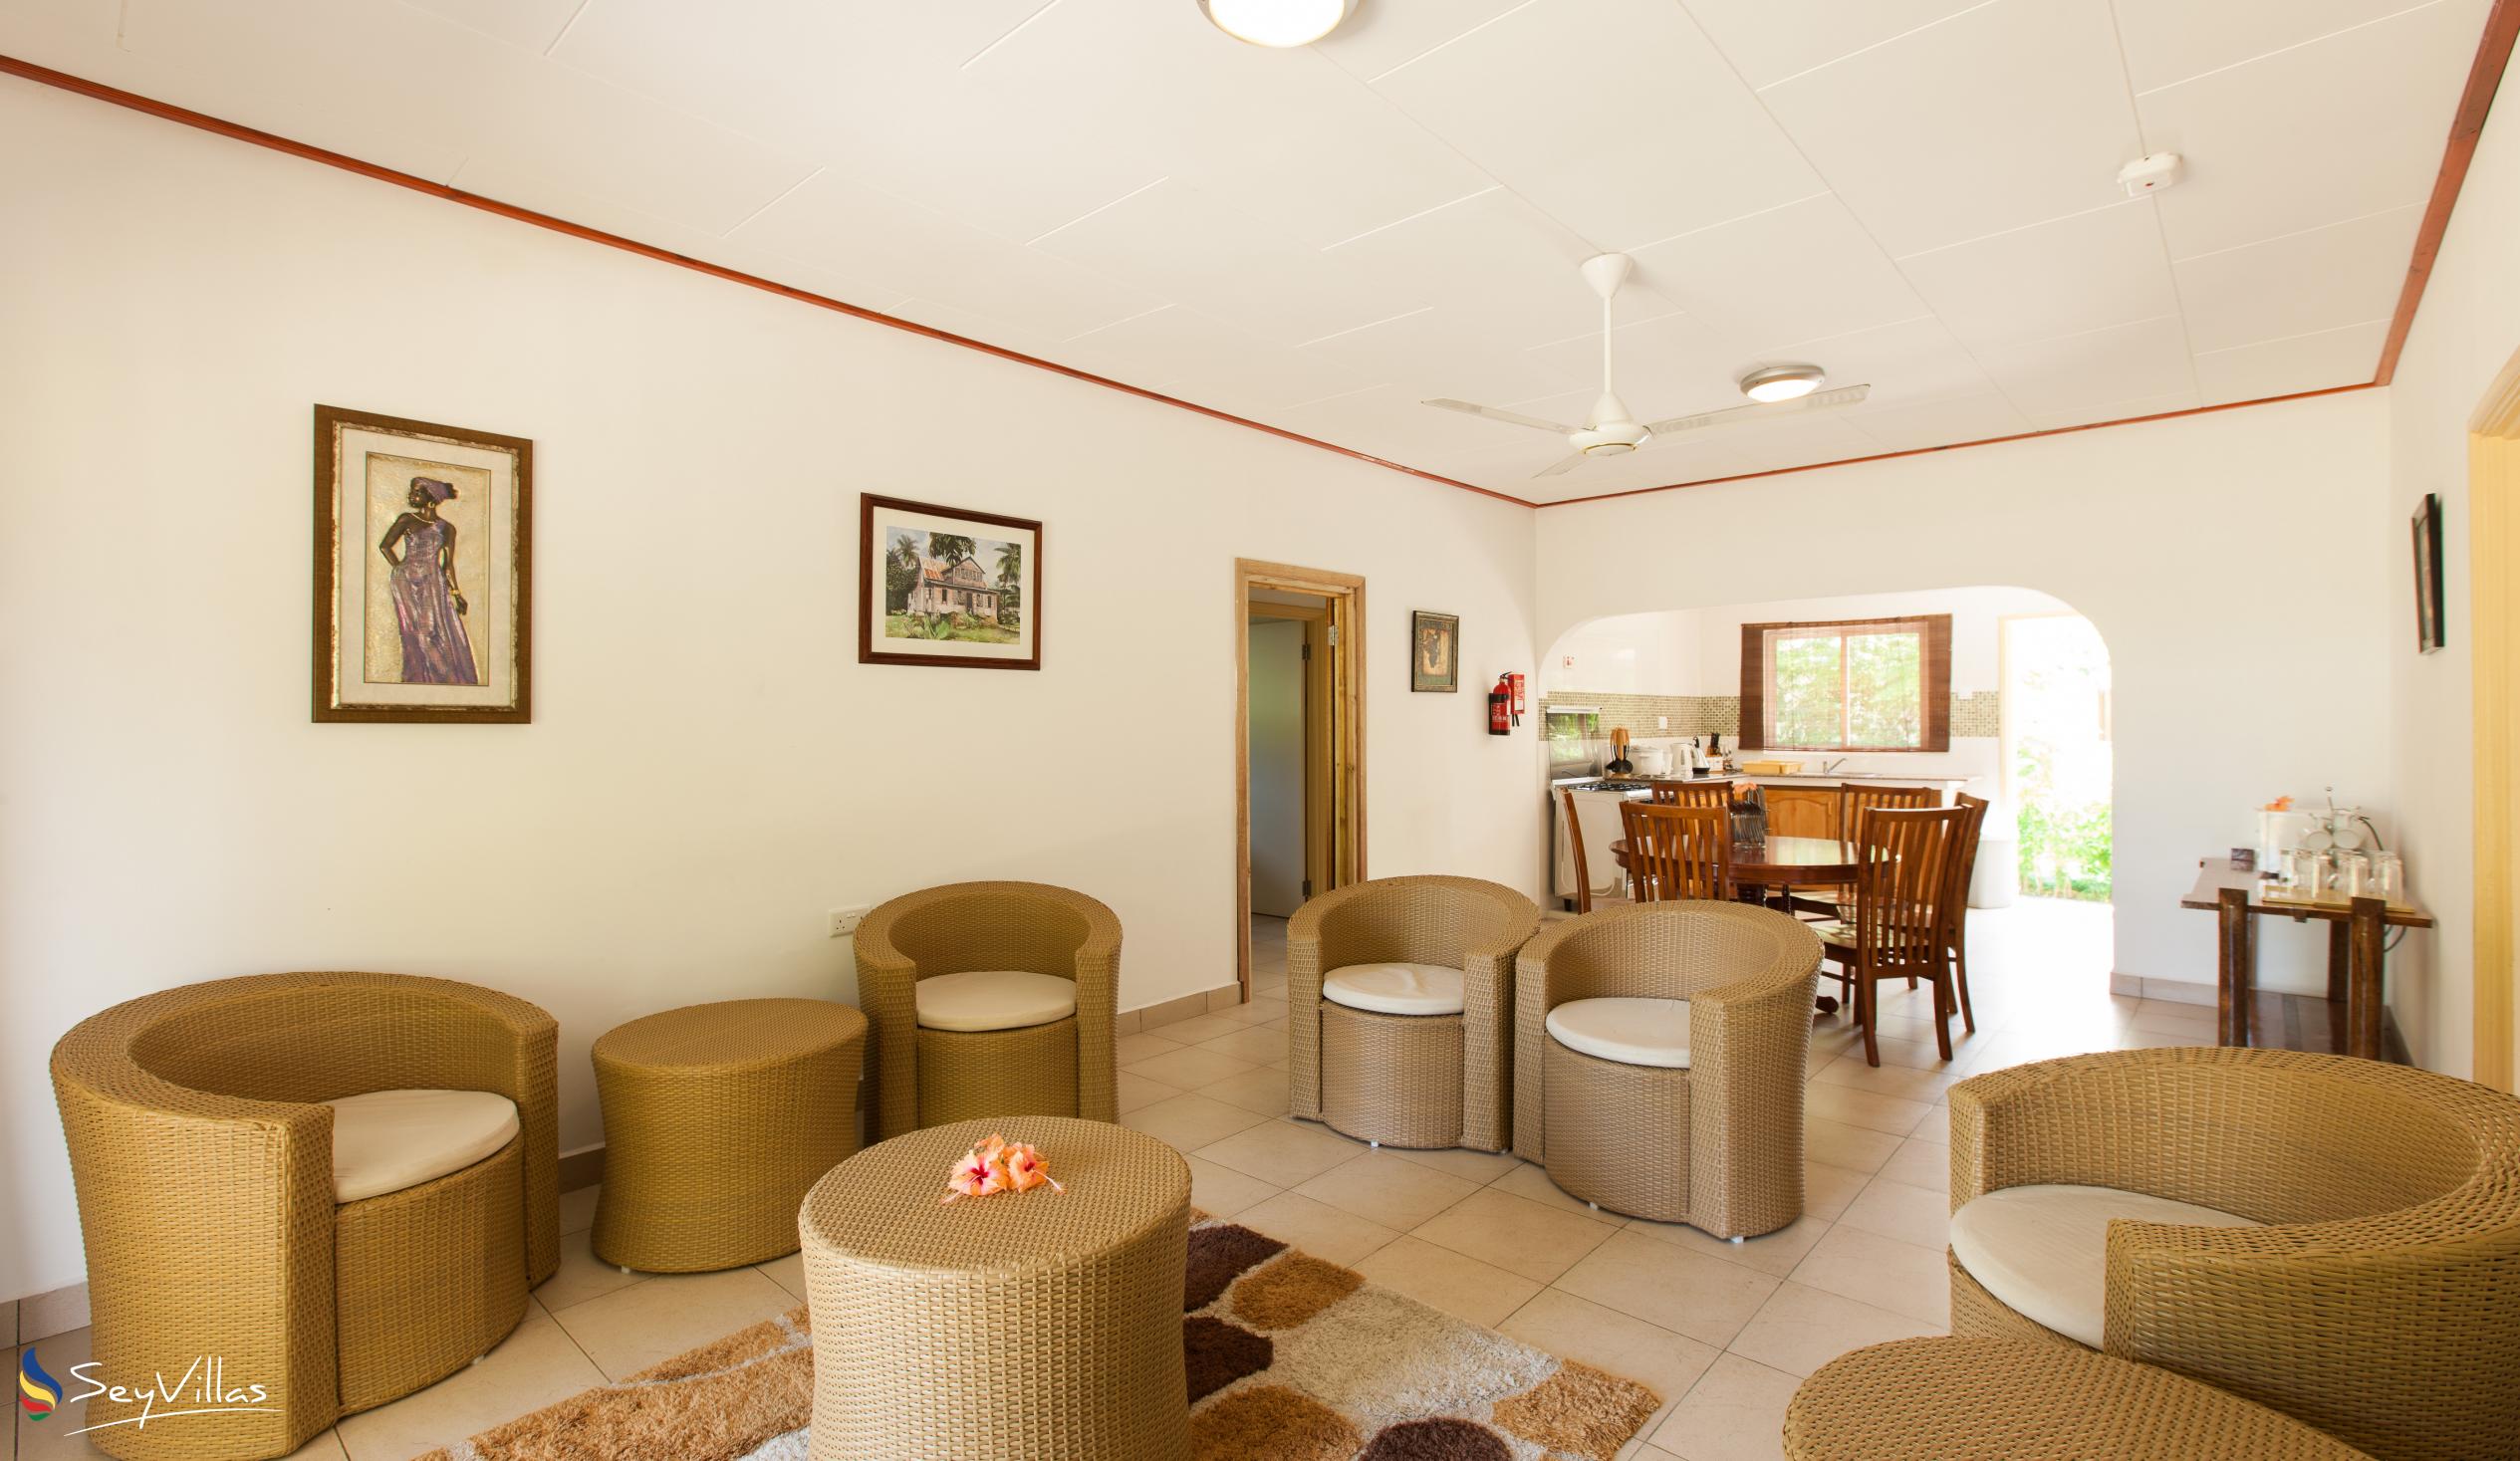 Foto 7: Hostellerie La Digue - Chalet mit 3 Schlafzimmern - La Digue (Seychellen)